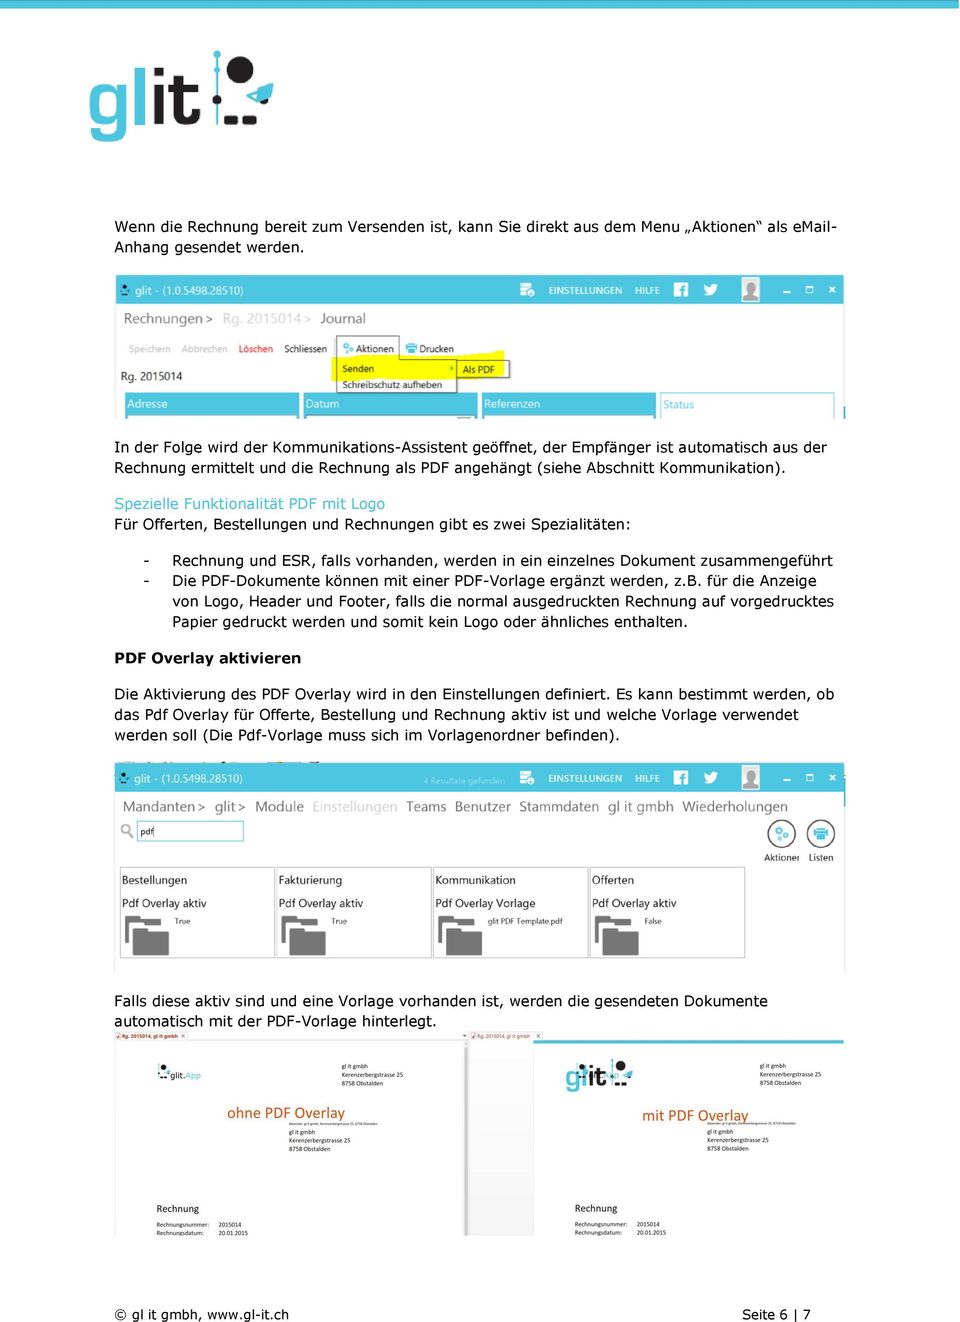 Spezielle Funktionalität PDF mit Logo Für Offerten, Bestellungen und Rechnungen gibt es zwei Spezialitäten: - Rechnung und ESR, falls vorhanden, werden in ein einzelnes Dokument zusammengeführt - Die